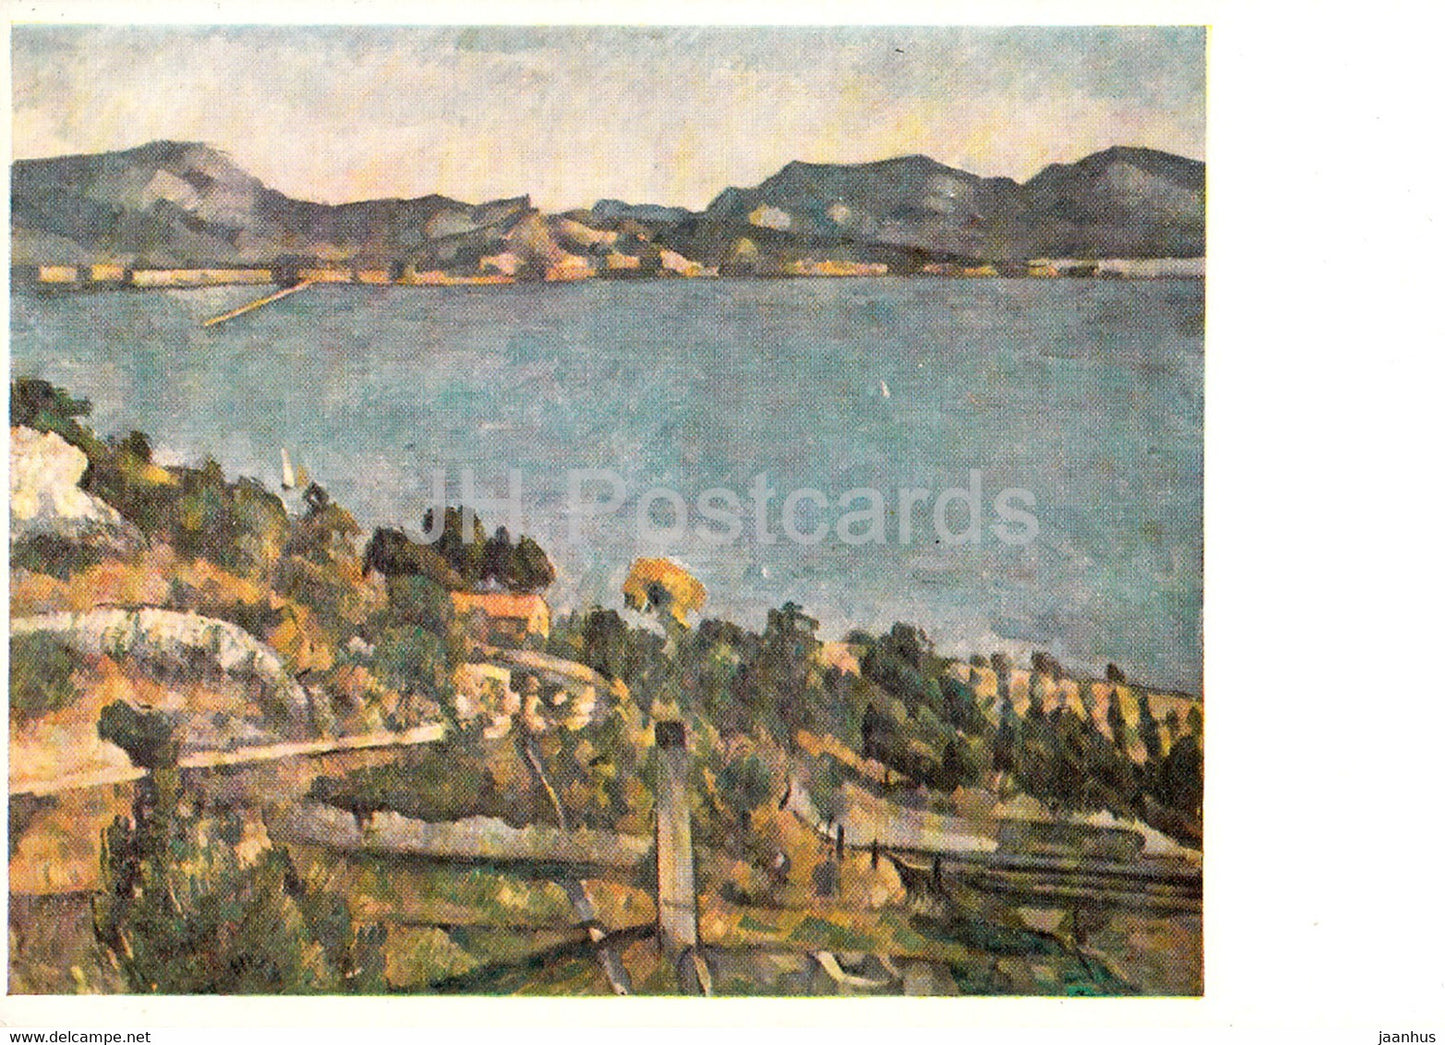 painting by Paul Cezanne - Der Golf von Marseille von der Bucht von L'Estaque aus - French art - Germany DDR - unused - JH Postcards